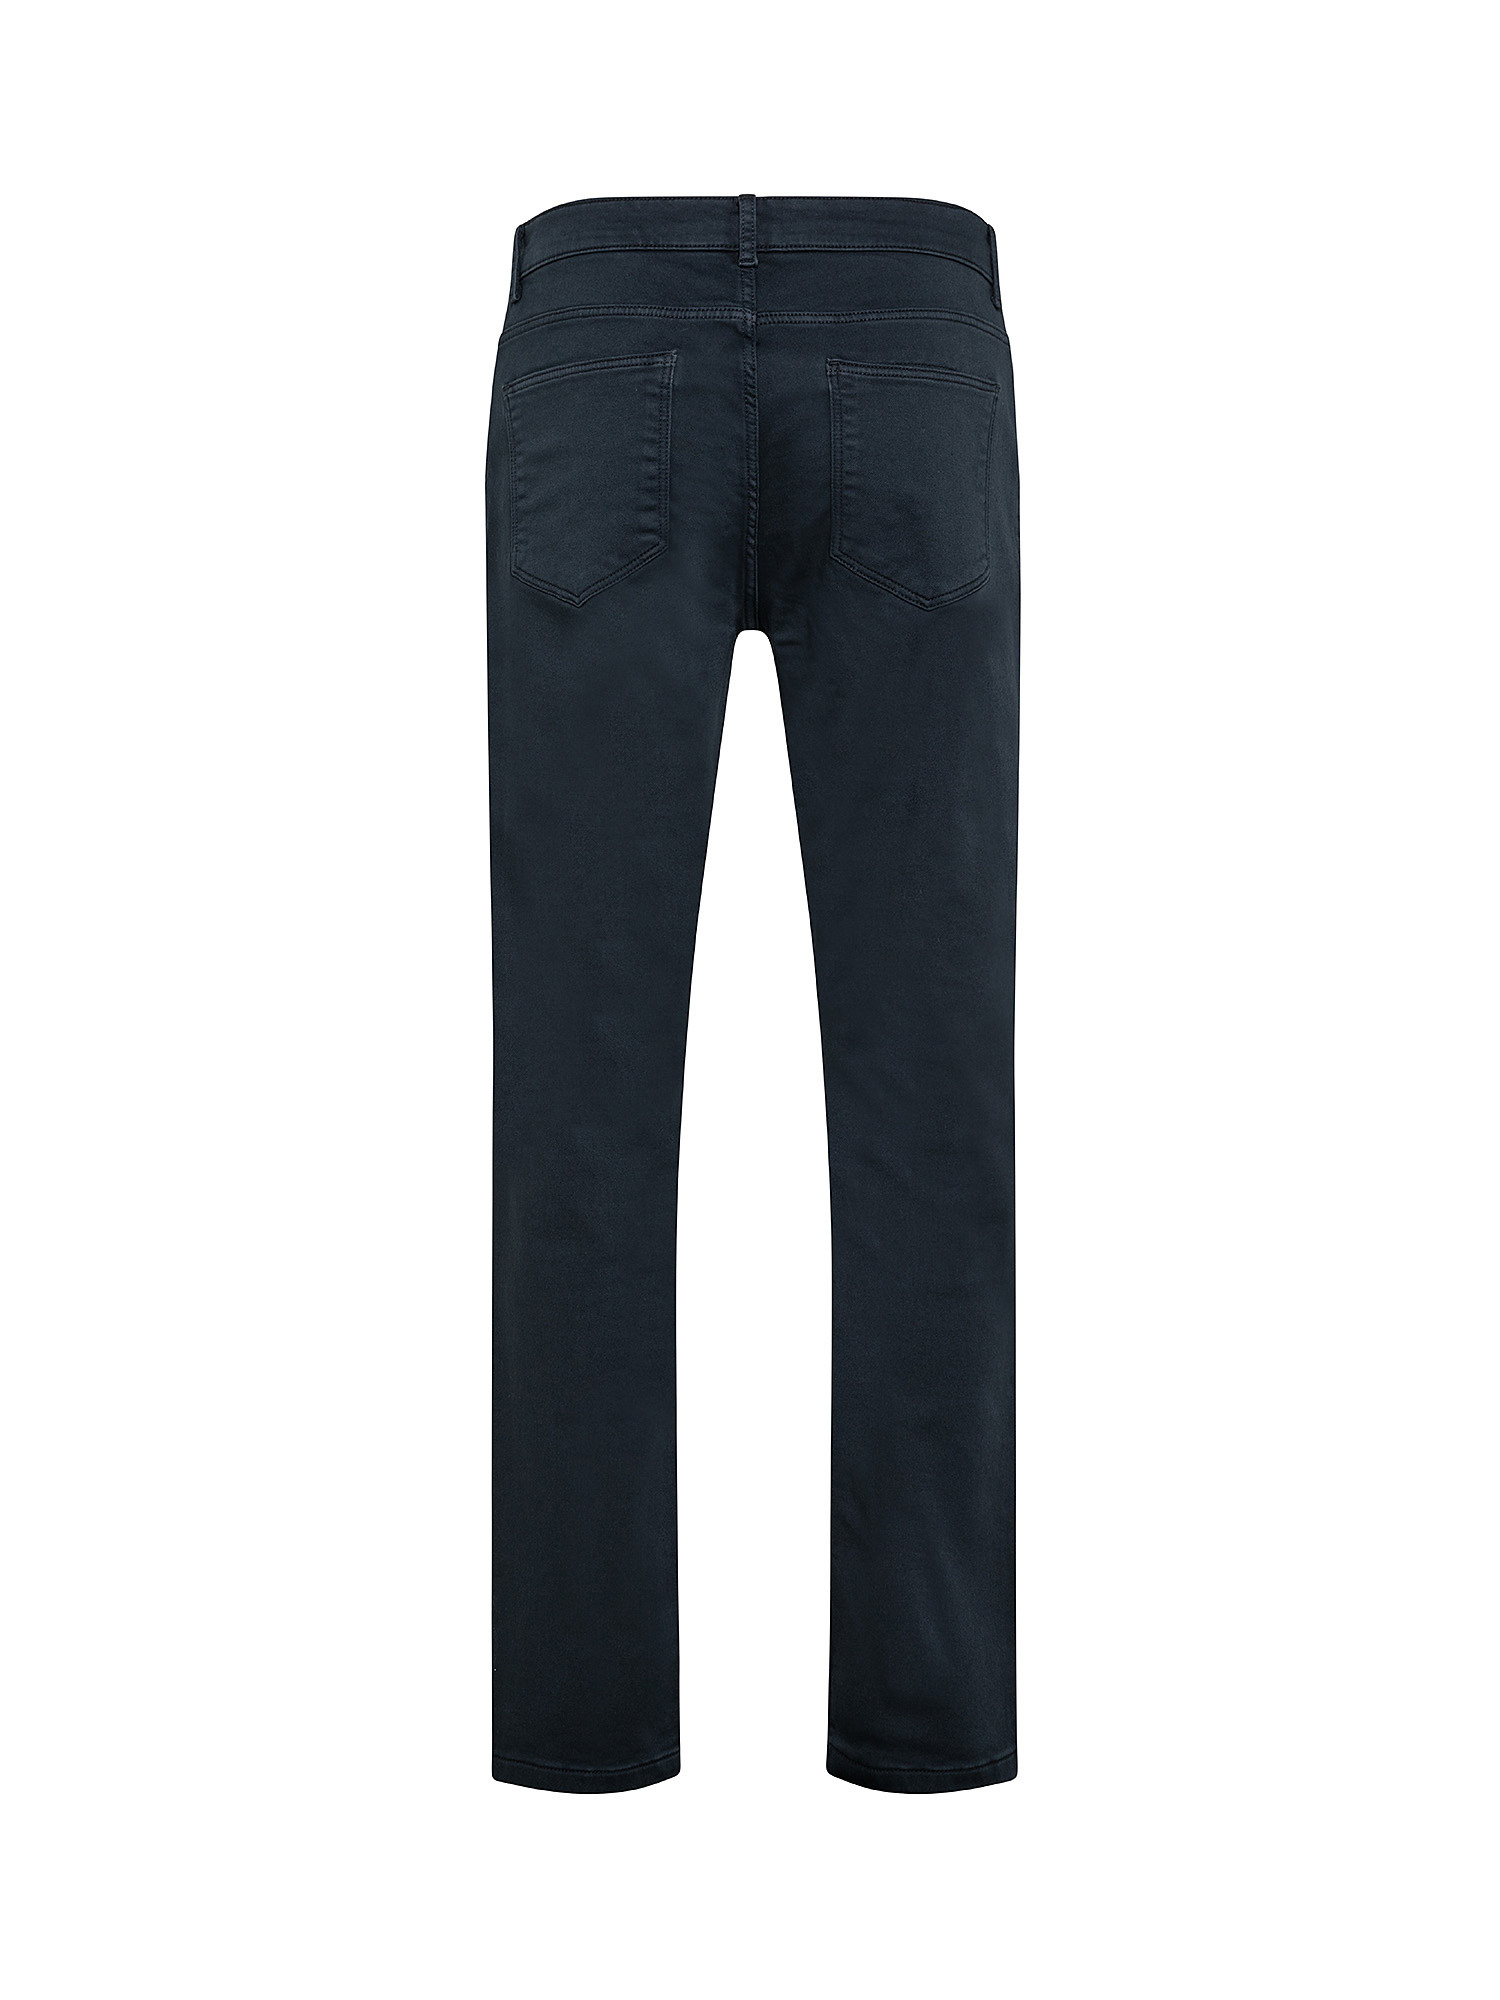 Pantalone 5 tasche slim in felpa, Blu, large image number 1